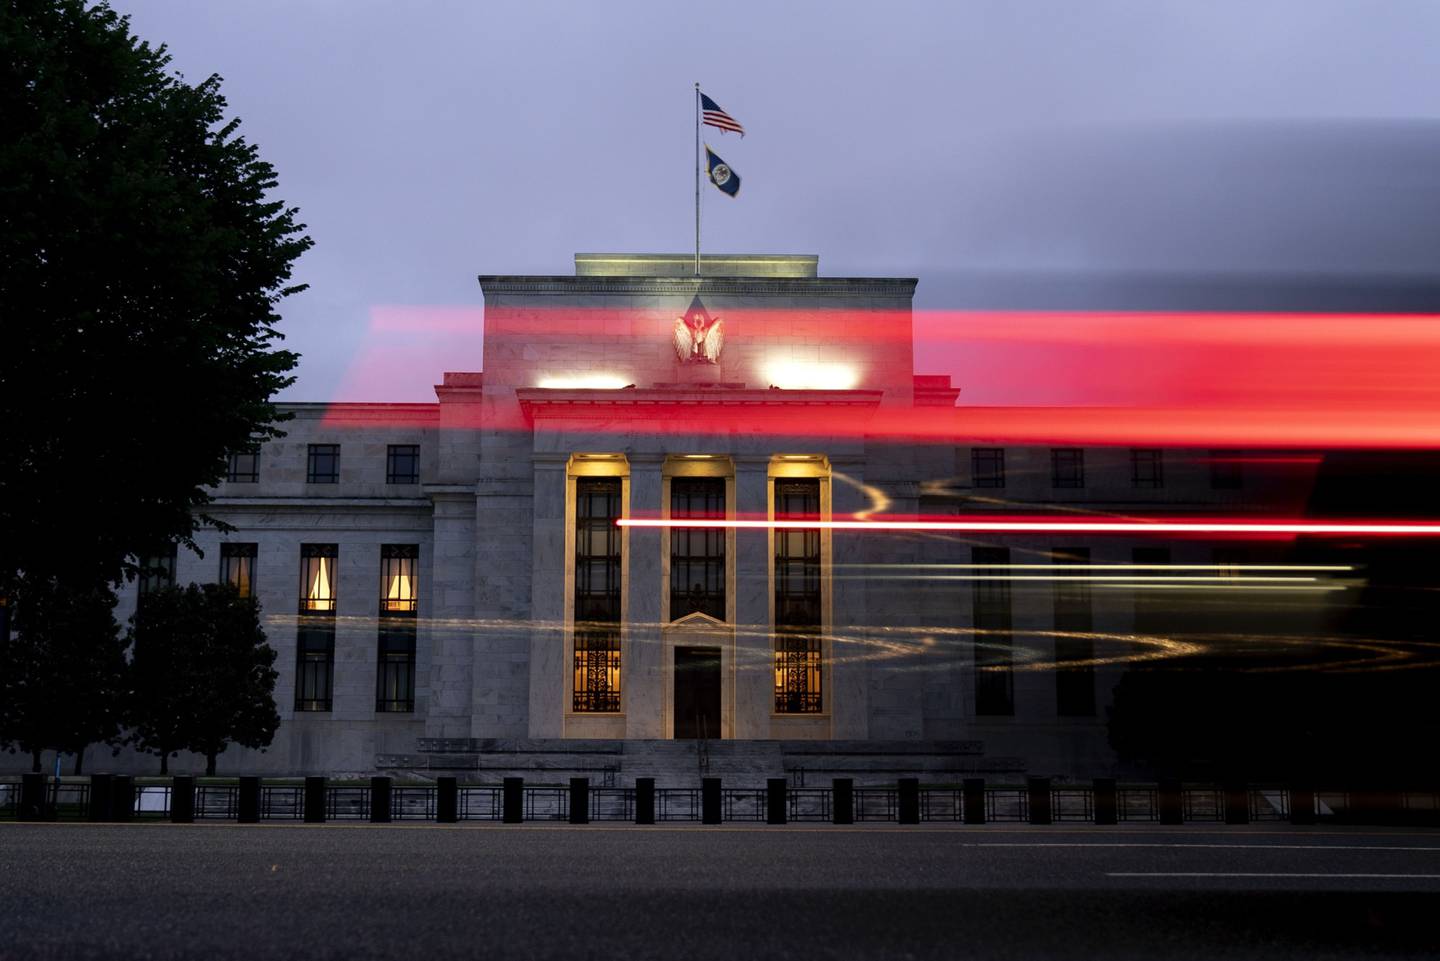 La luz sale de un vehículo frente al edificio de la Reserva Federal Marriner S. Eccles en Washington, D.C., Estados Unidos, el sábado 26 de junio de 2021.